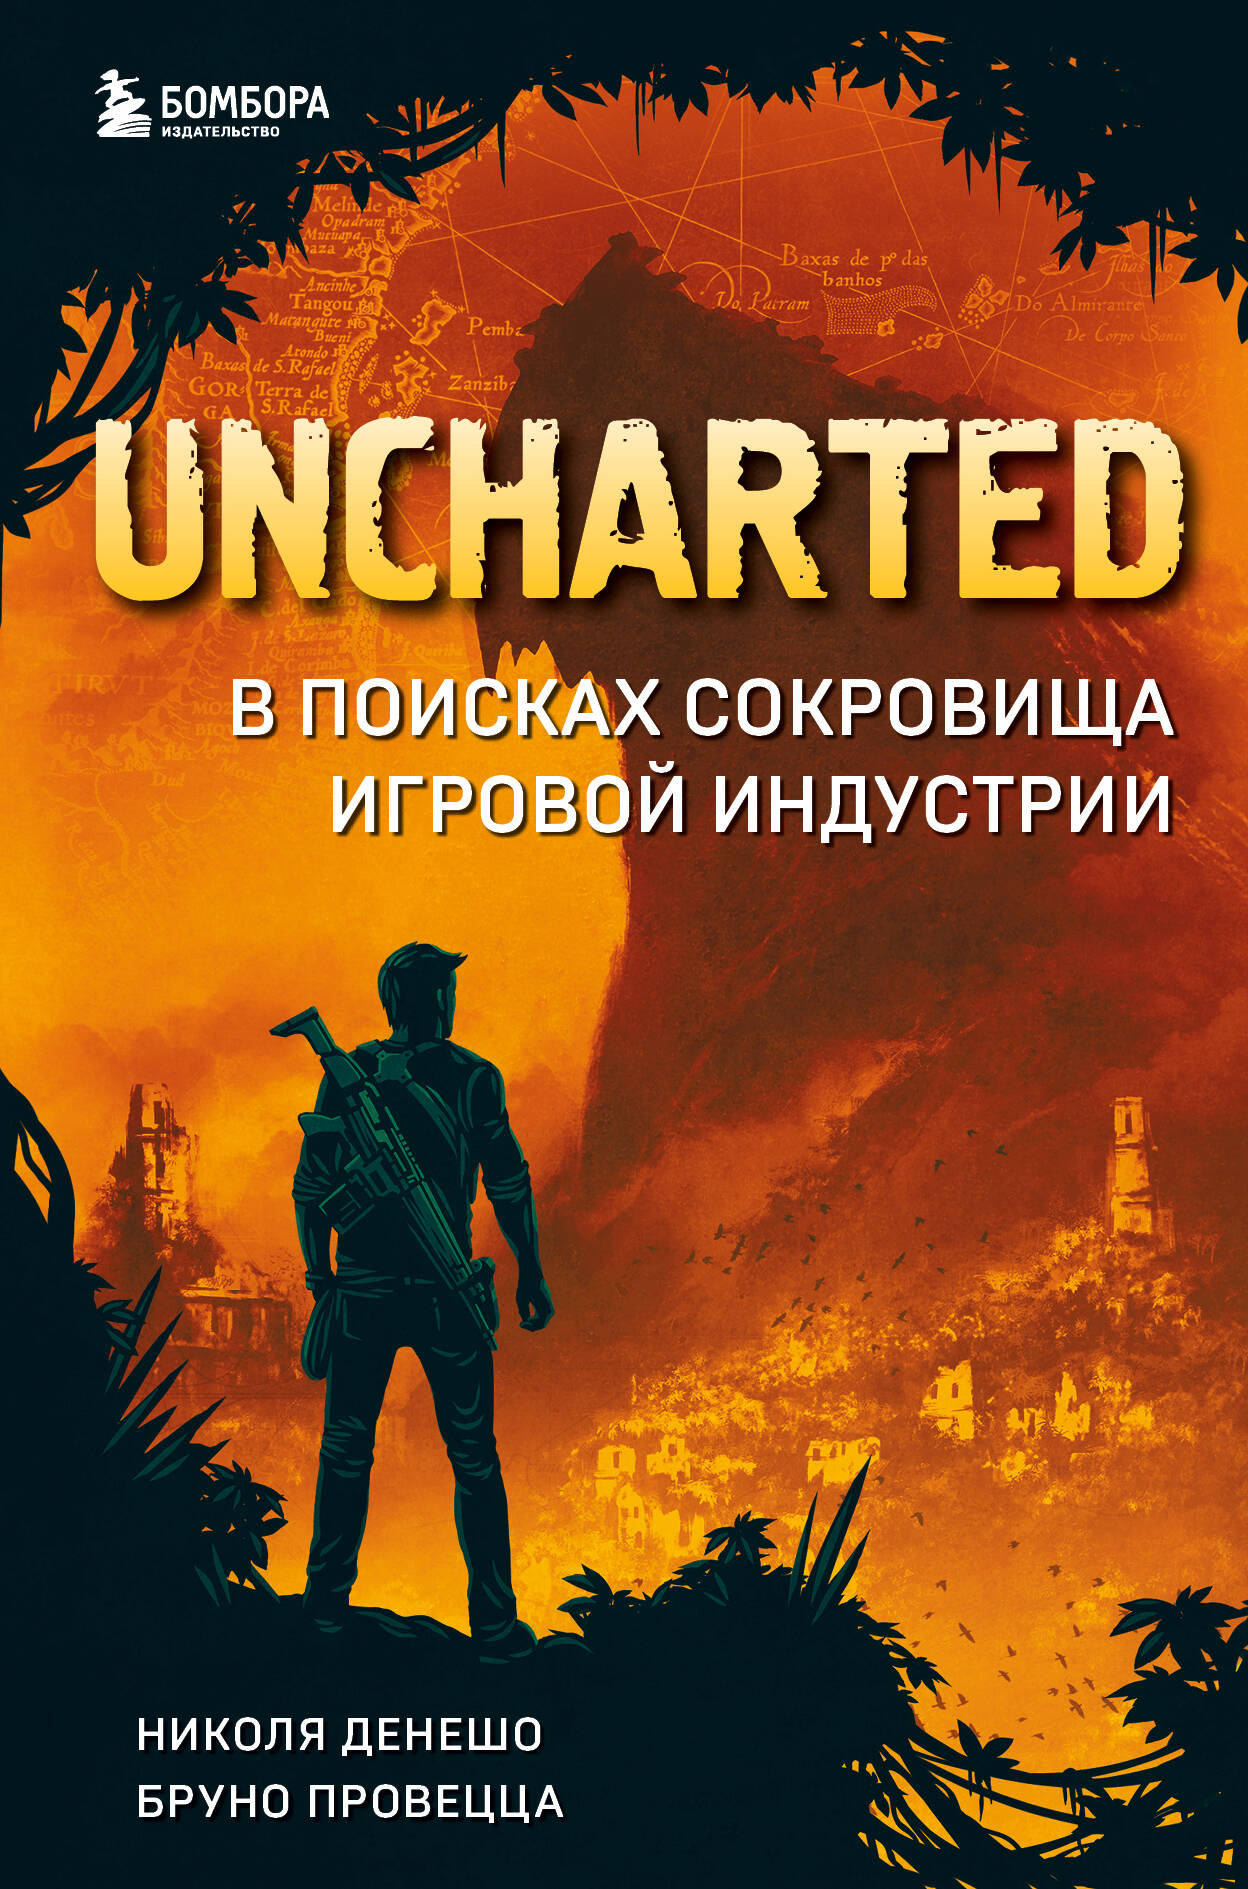  книга Uncharted. В поисках сокровища игровой индустрии